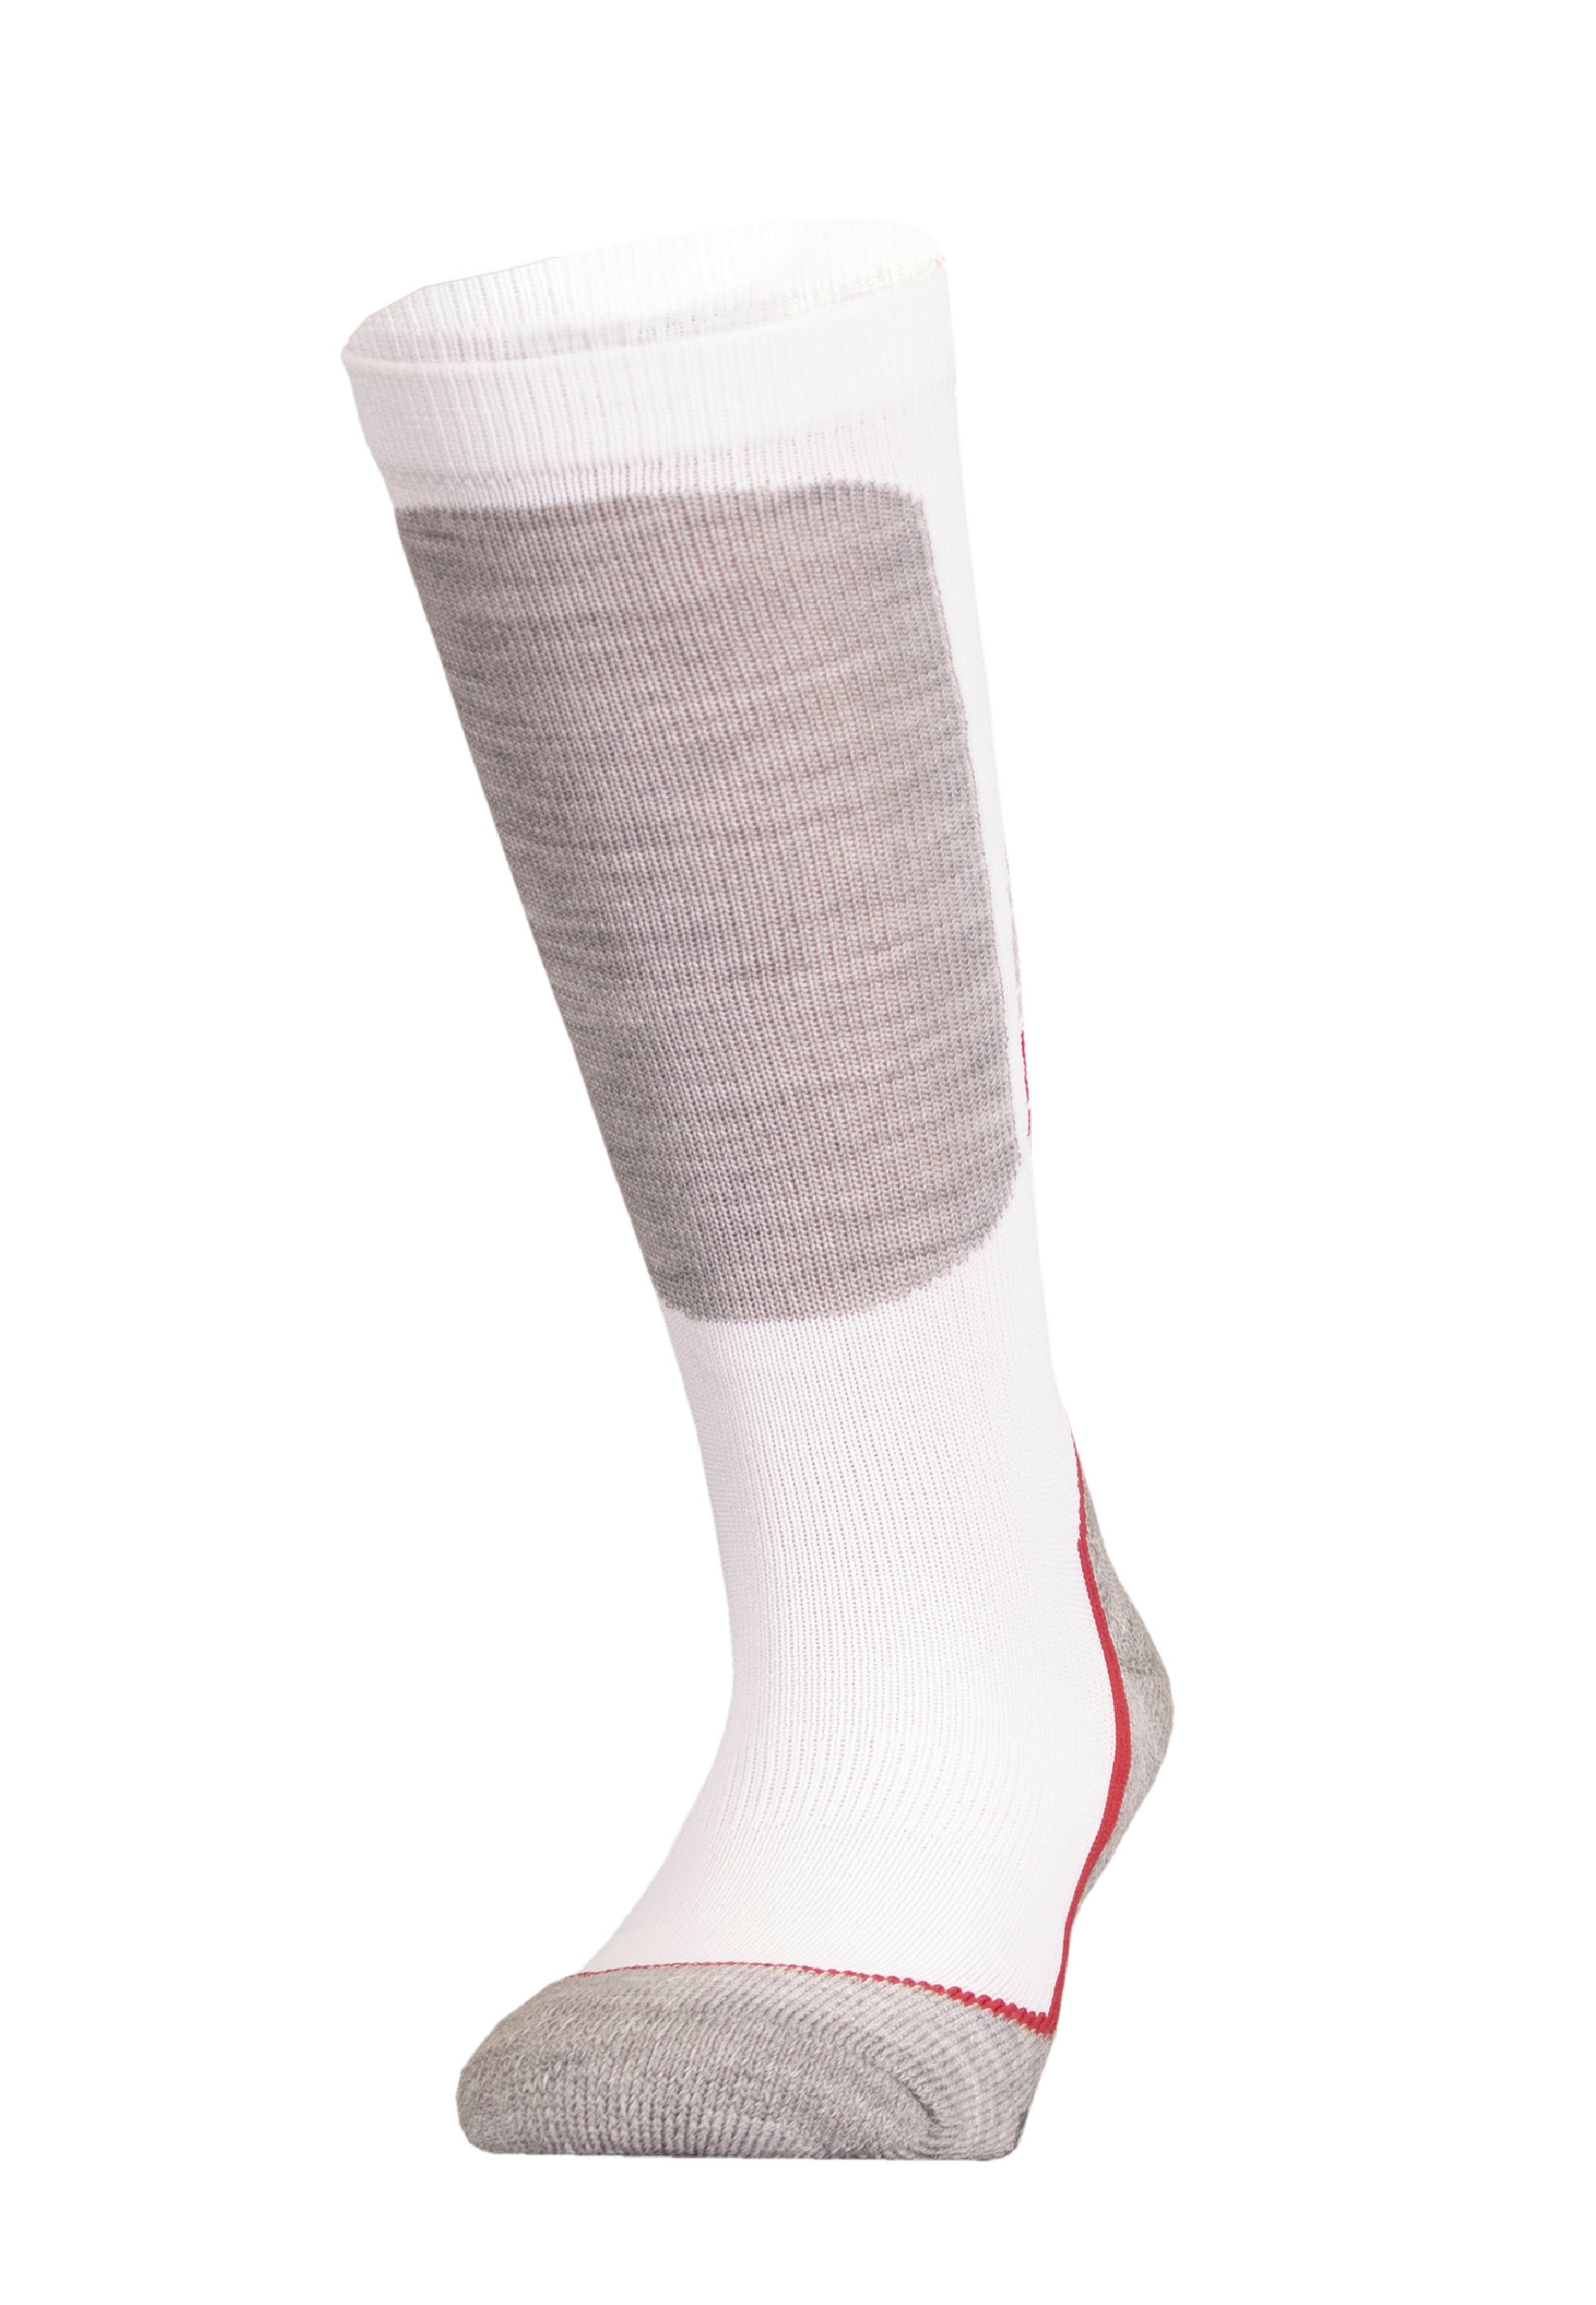 UphillSport Socken BAUR Technologie kaufen Dry- »HALLA Quick mit | (1 JR«, Paar), praktischer